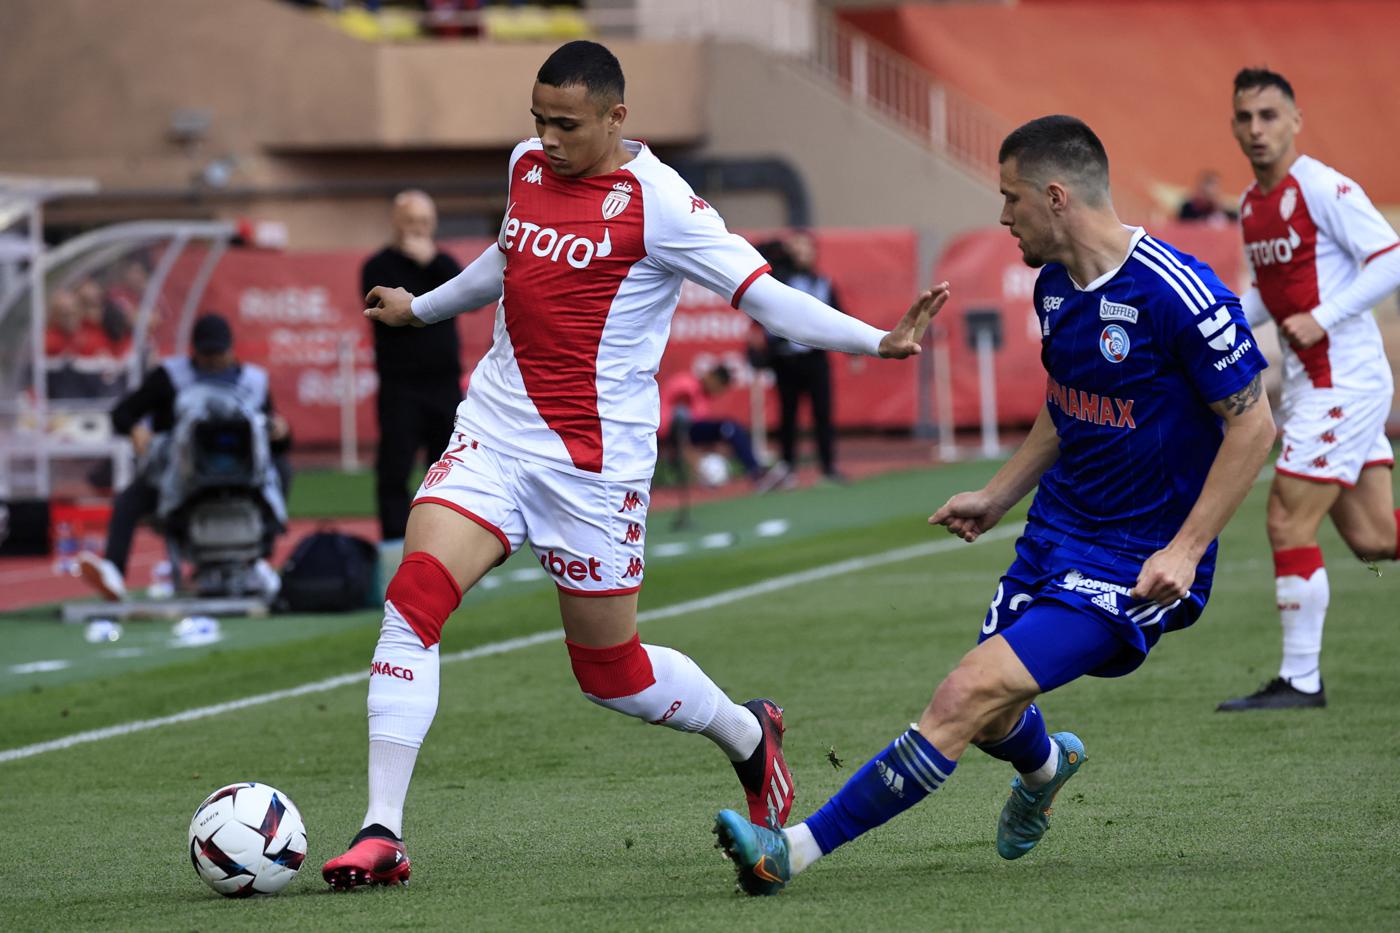 Monaco - Straßburg - 4:3. Französische Meisterschaft, 29. Runde. Spielbericht, Statistiken